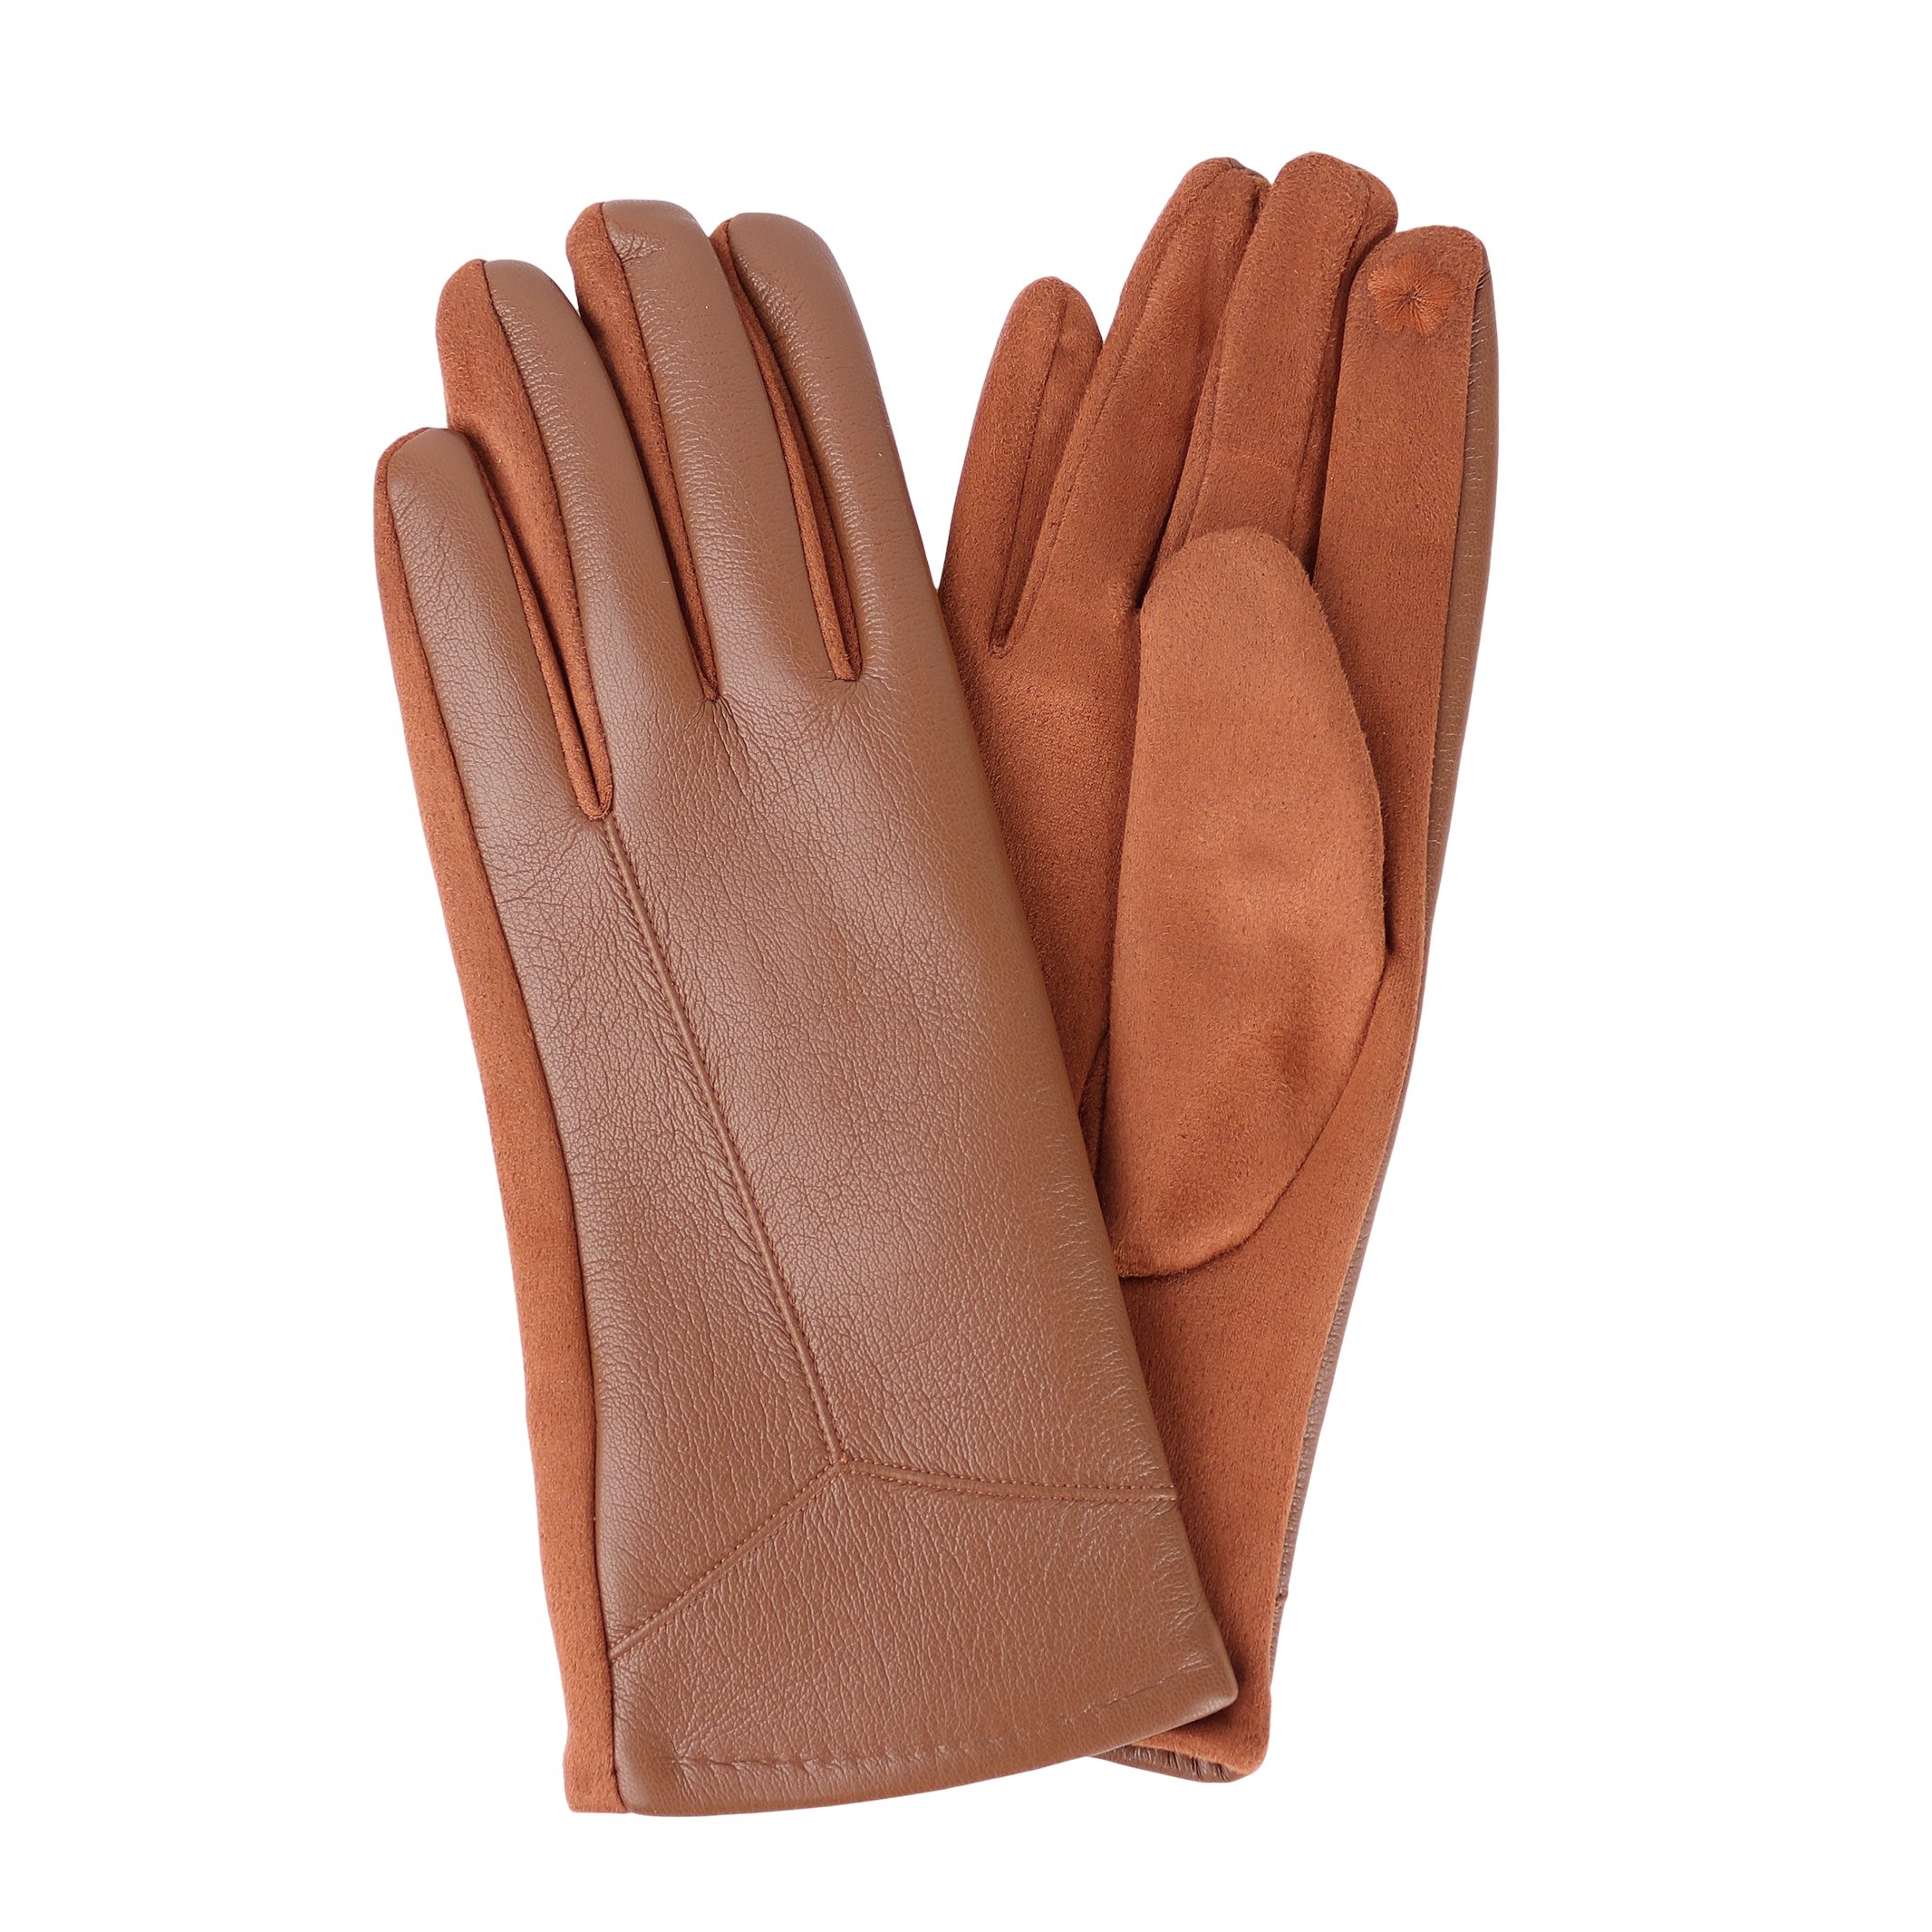 MIRROSI Lederhandschuhe Damen Touchscreen Handschuhe gefüttert Warm ONESIZE aus Veganleder sehr weich und warm ideal für Herbst oder Winter Camel